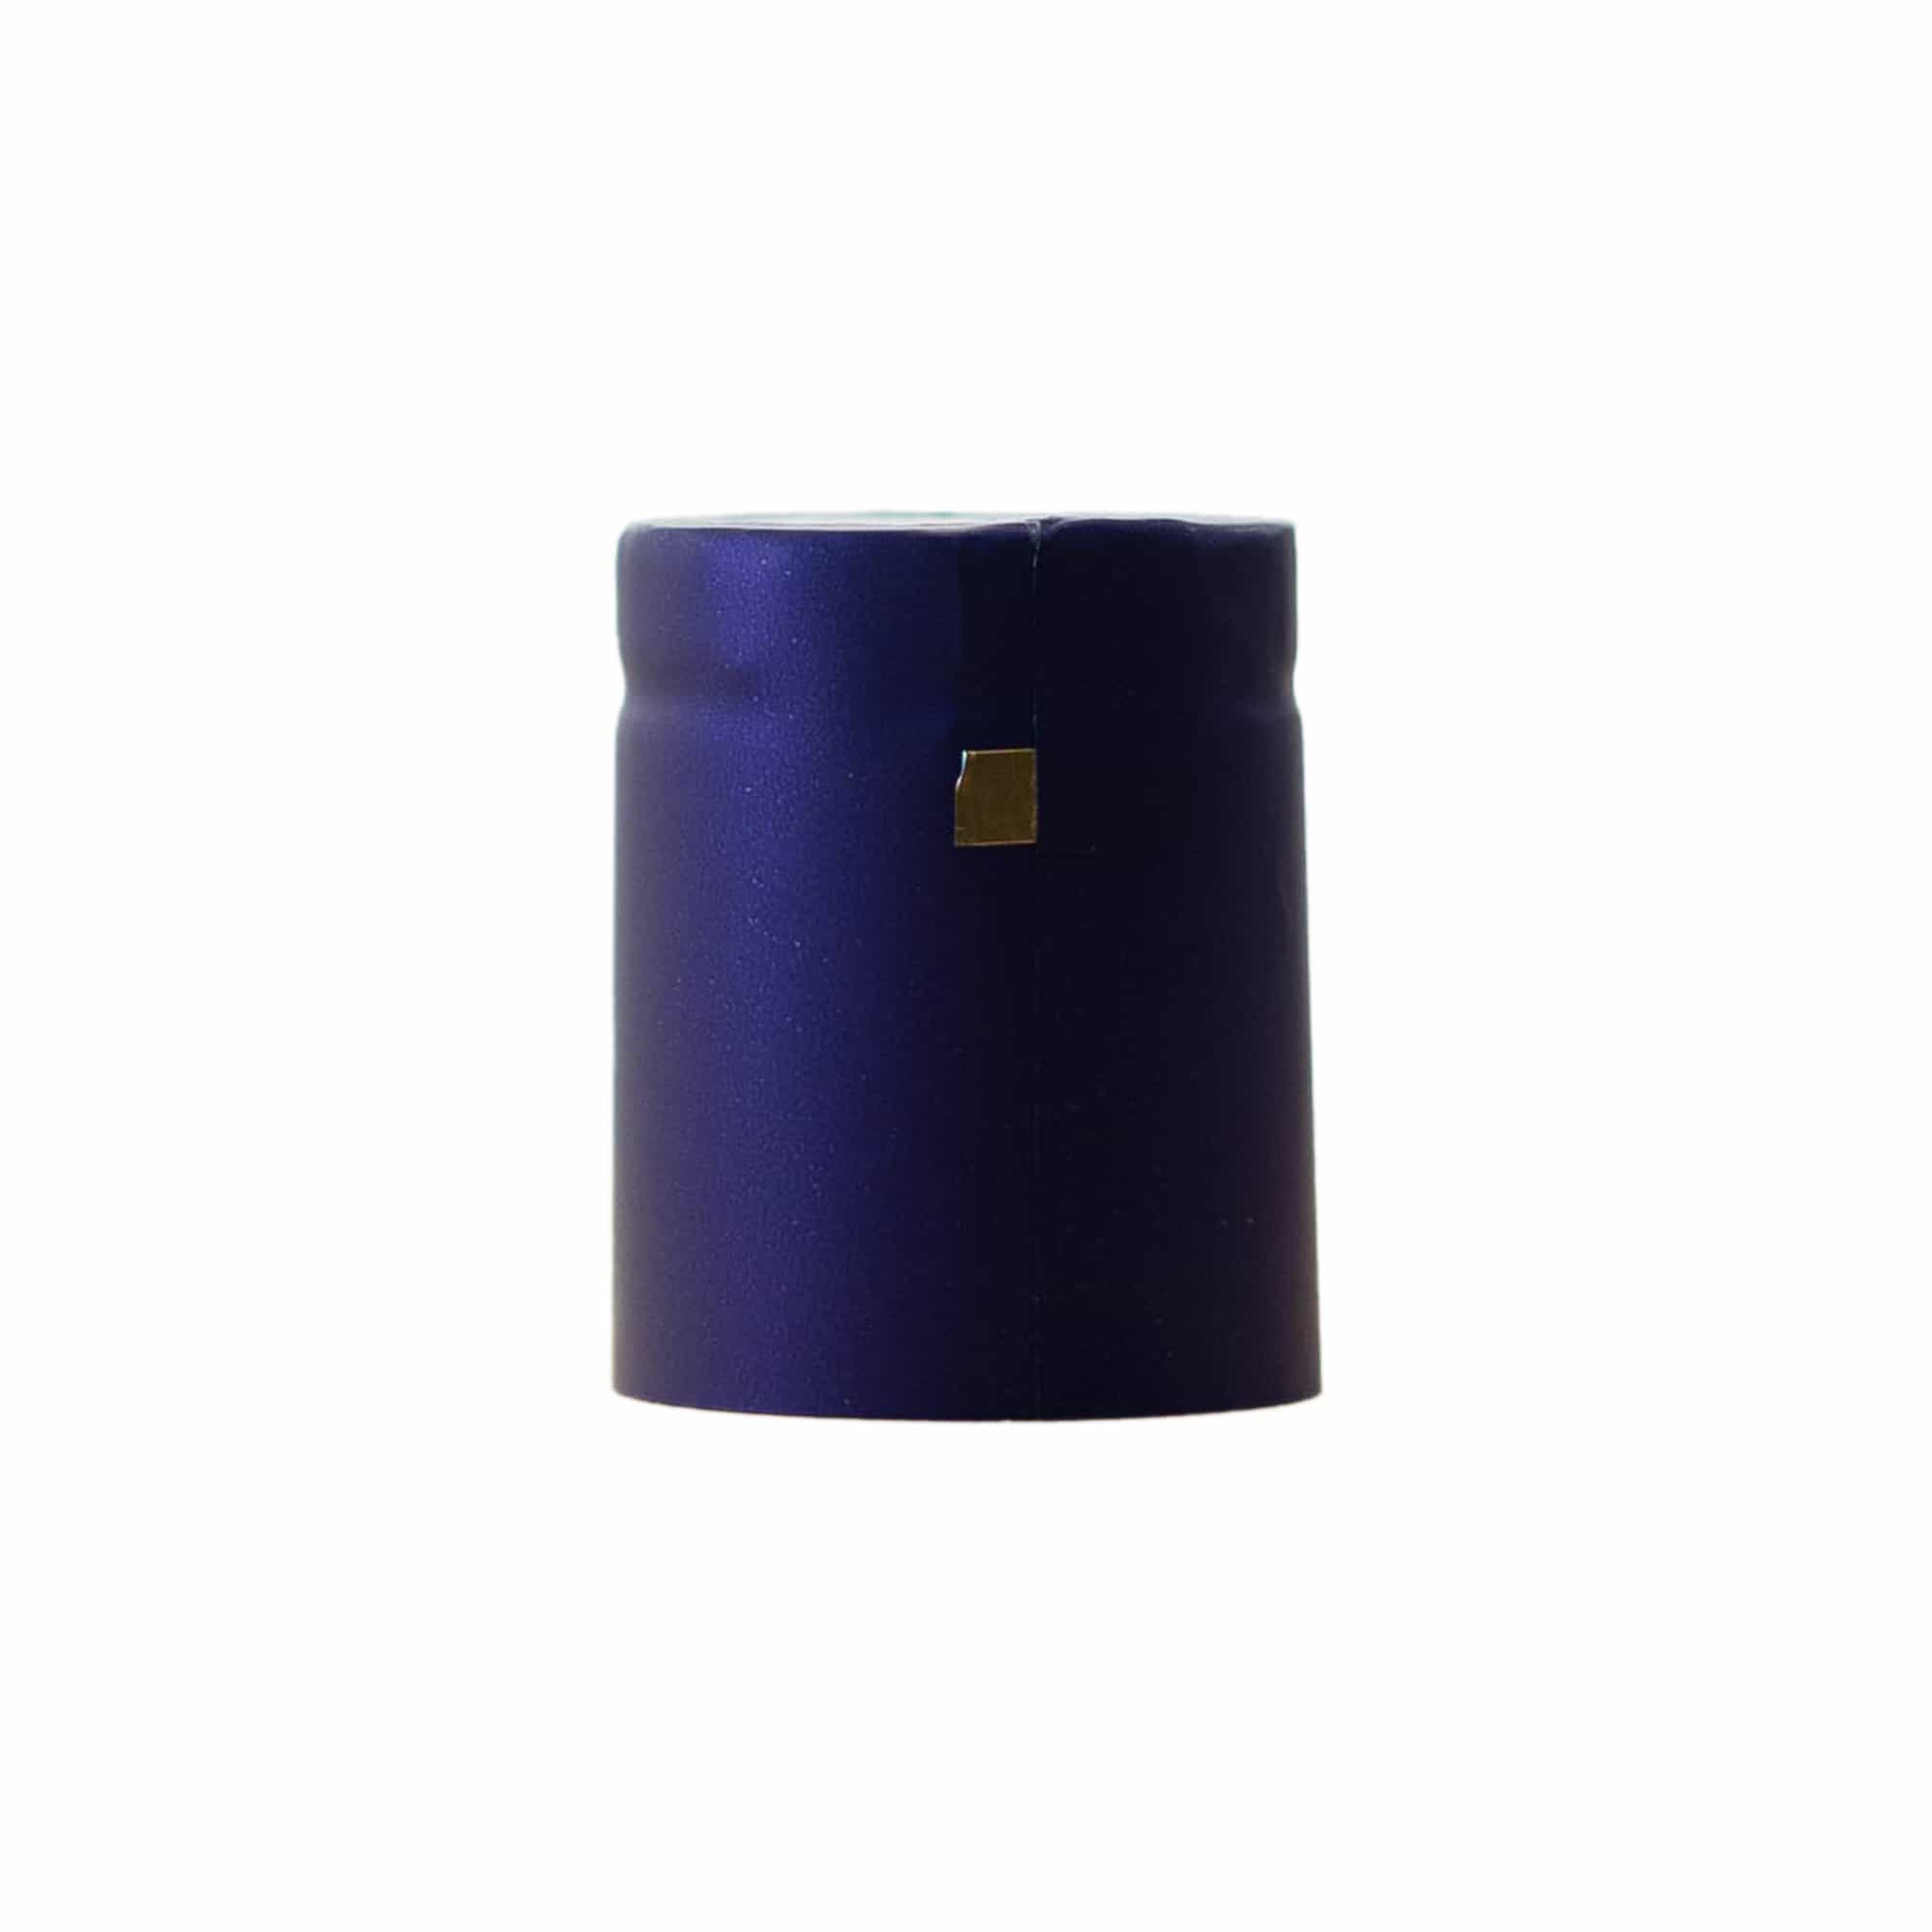 Smršťovací kapsle 32x41, plast PVC, fialová